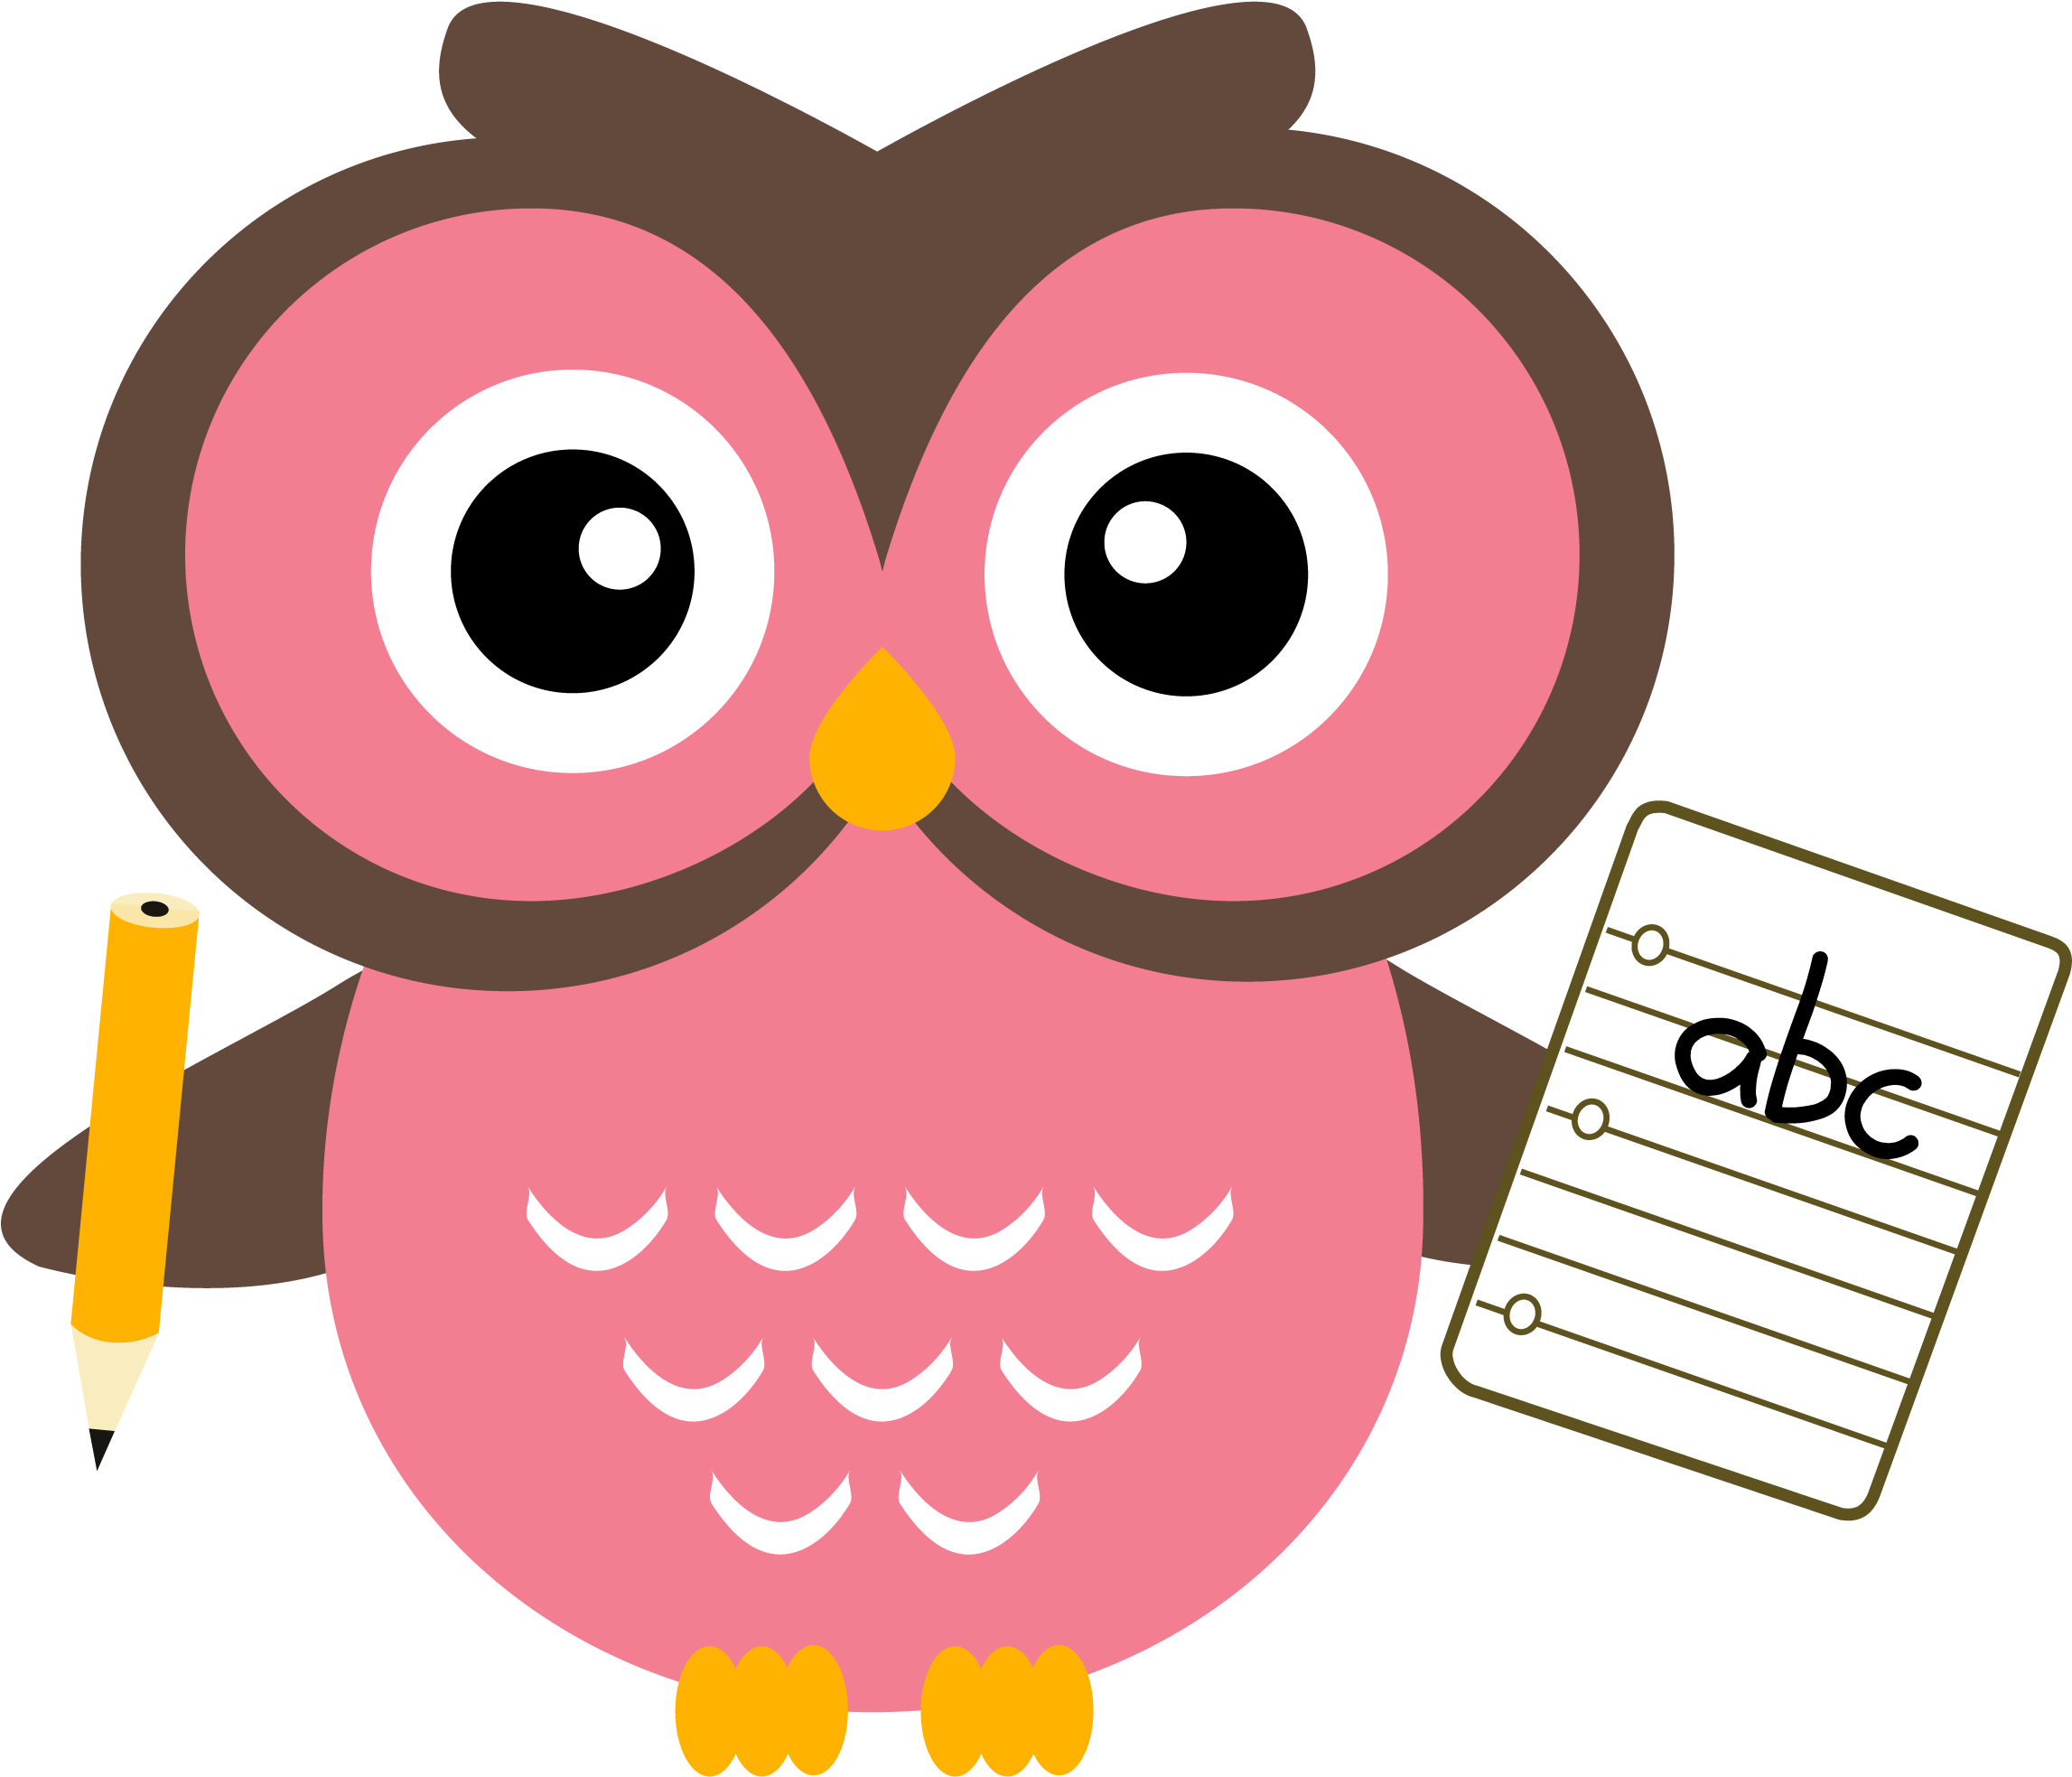 Homework - Cartoon Homework Owl (2317x1996)